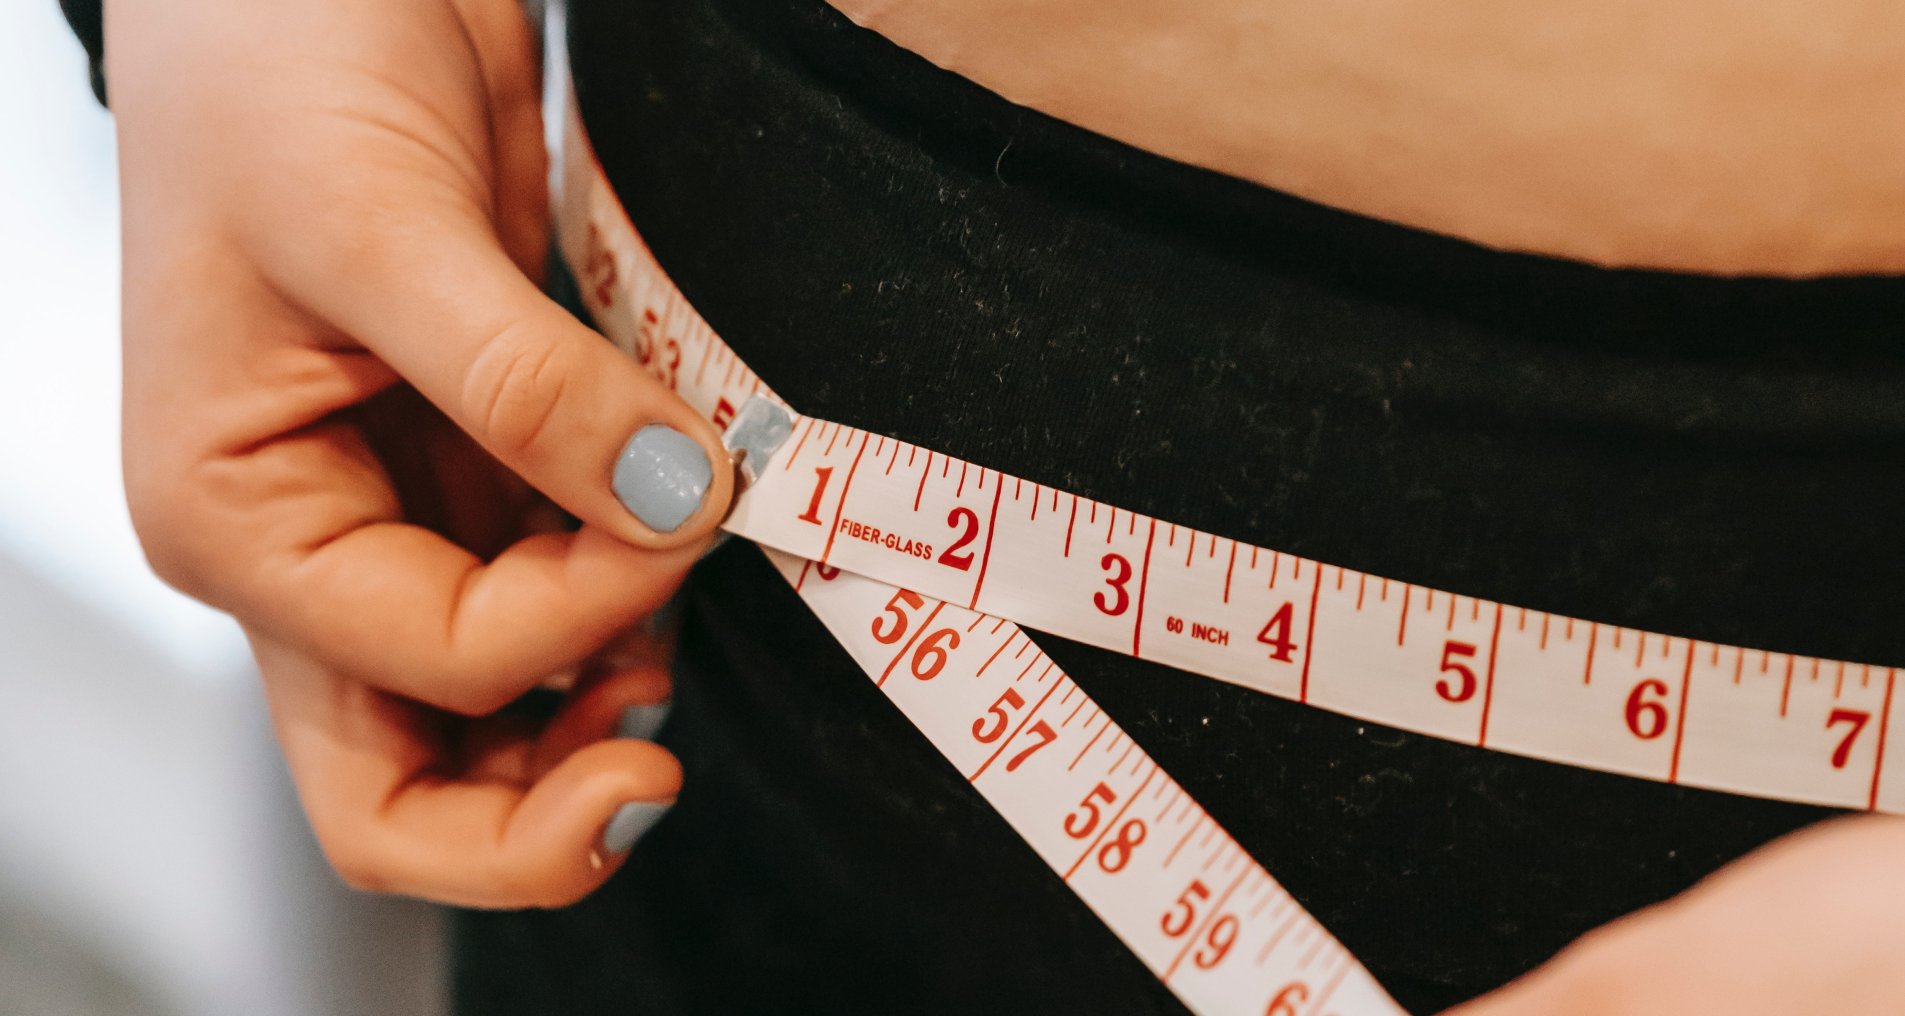 Омни-диета: как похудеть на 6 кг всего за две недели